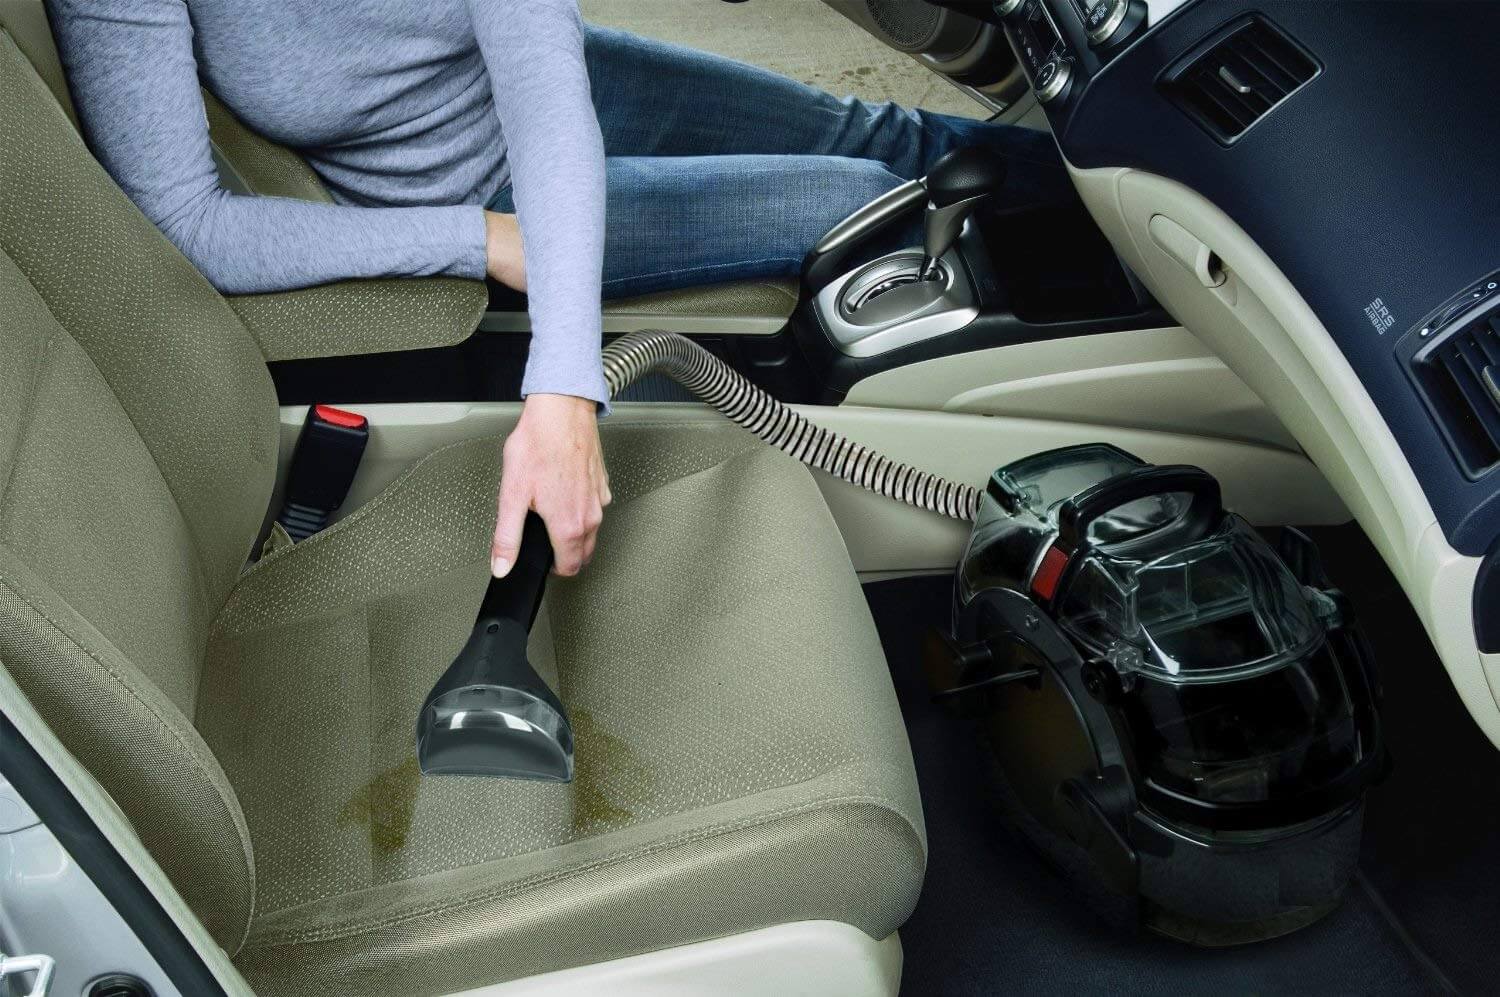 Hình ảnh: Vệ sinh ghế trên xe hơi bằng máy giặt thảm cầm tay